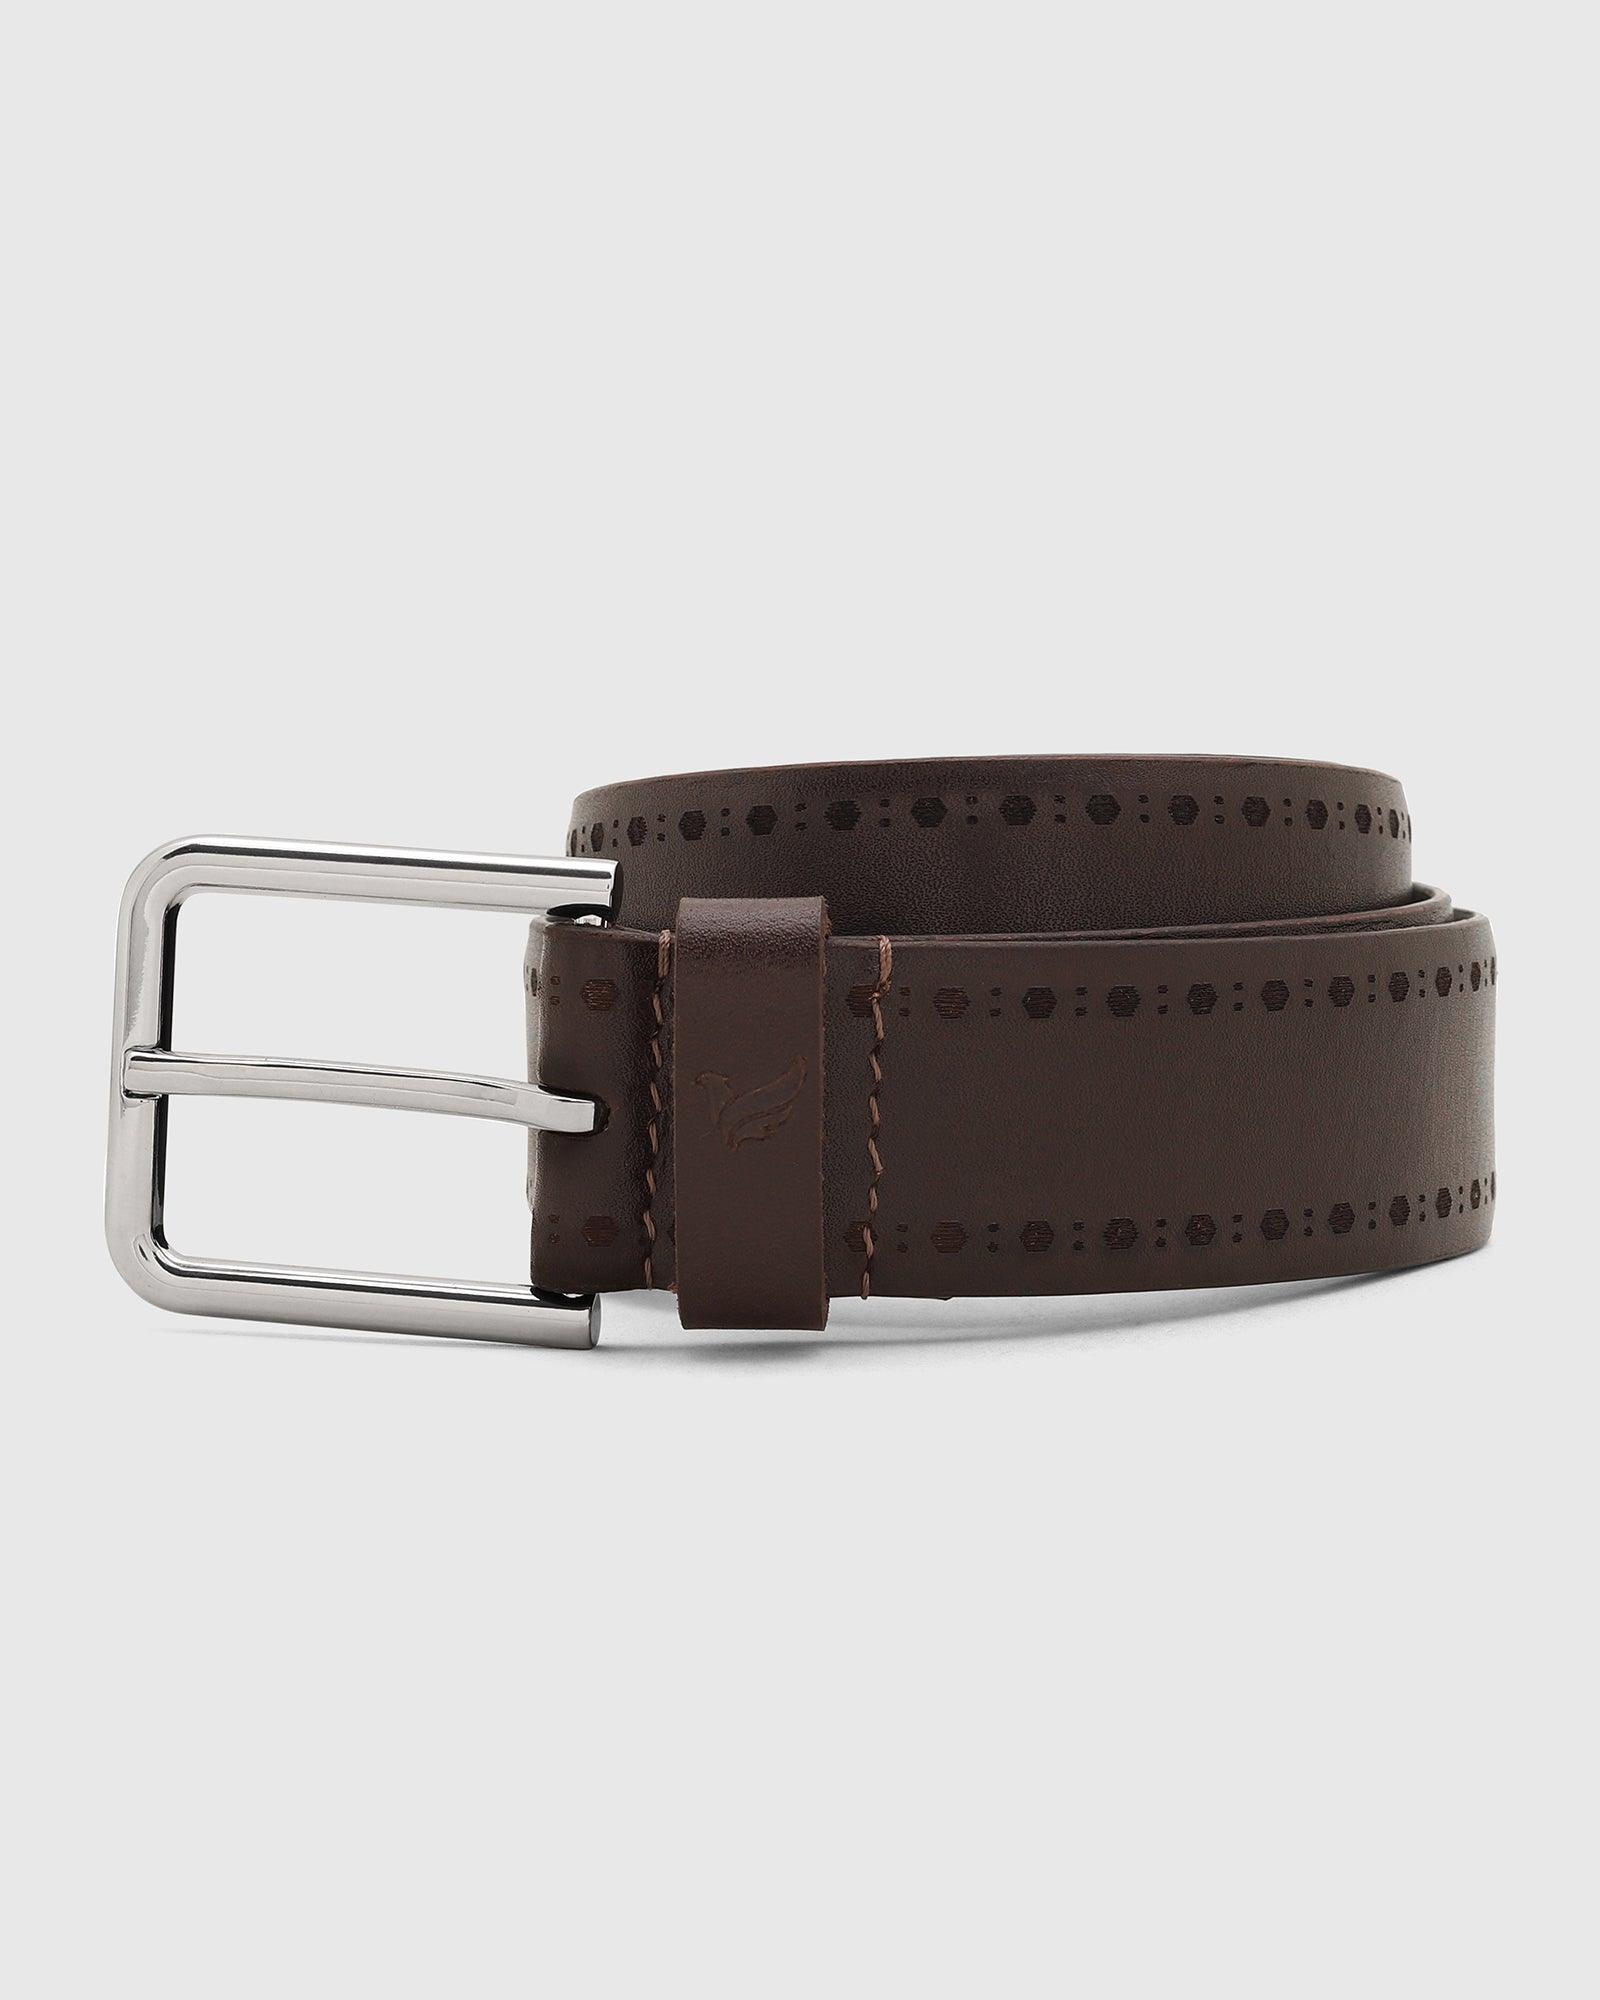 leather-burgandy-solid-belt---steven